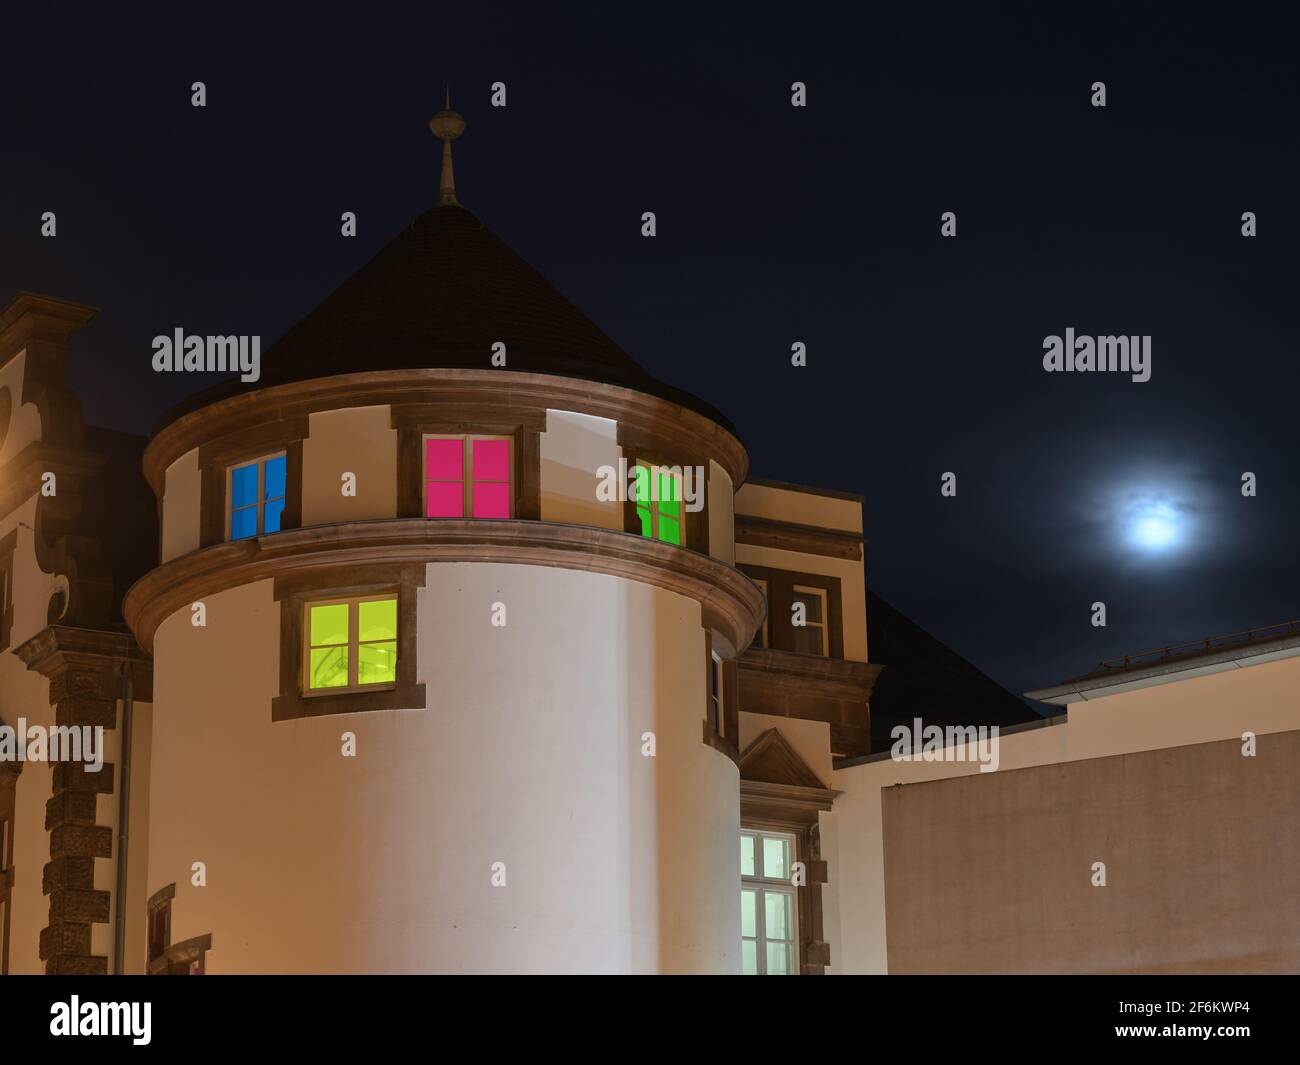 Ventanas de colores en la luna llena; Farbige Fenster bei Vollmond Foto de stock